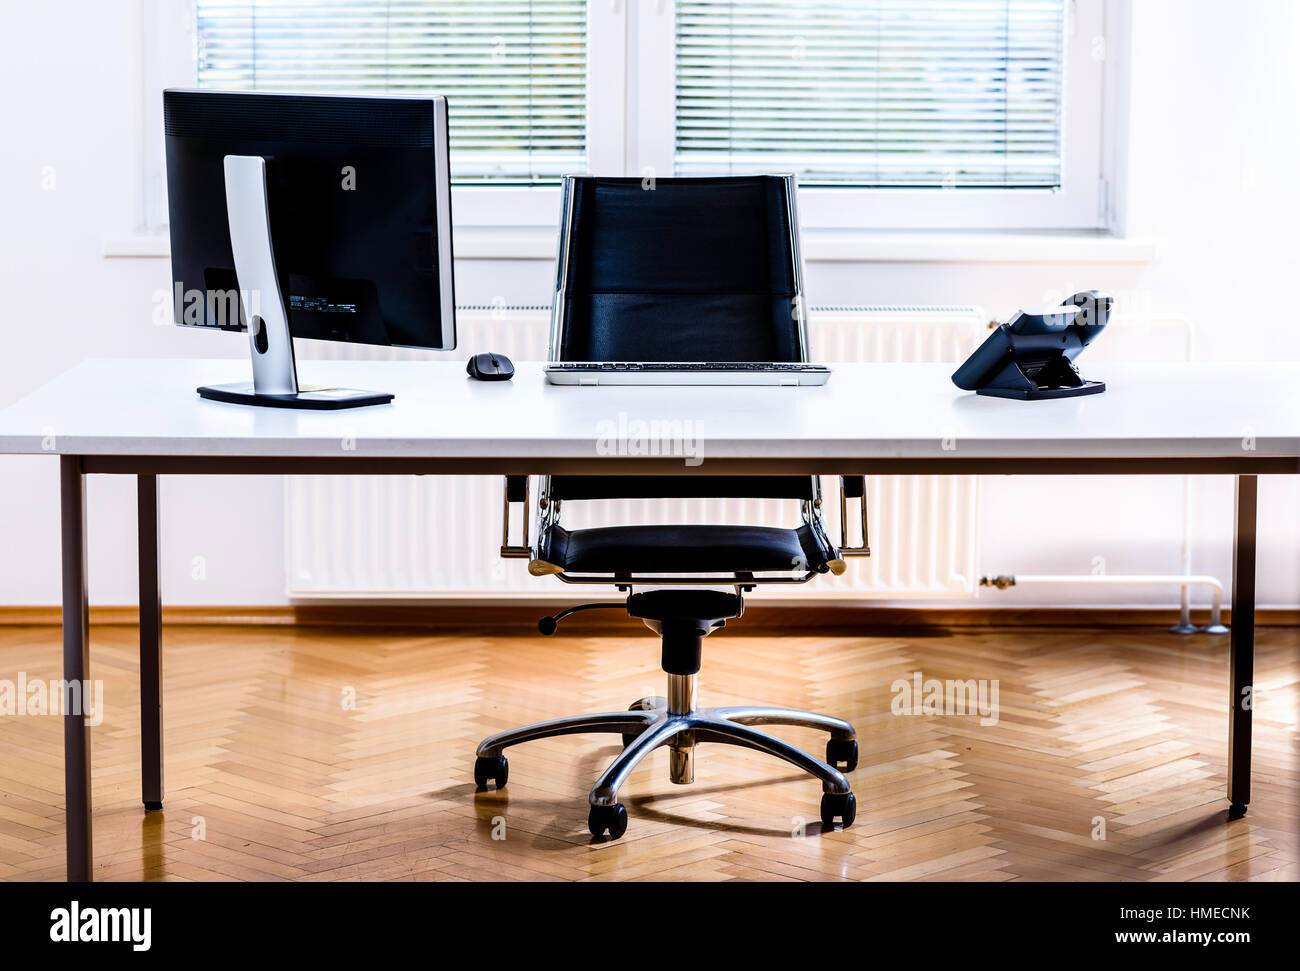 Moderne leeren Raum Schreibtisch mit Stuhl, Computer und Telefon. Konzept der corporate Stellenangebot, Förderung, Finanzwelt und Wirtschaft im Allgemeinen. Stockfoto